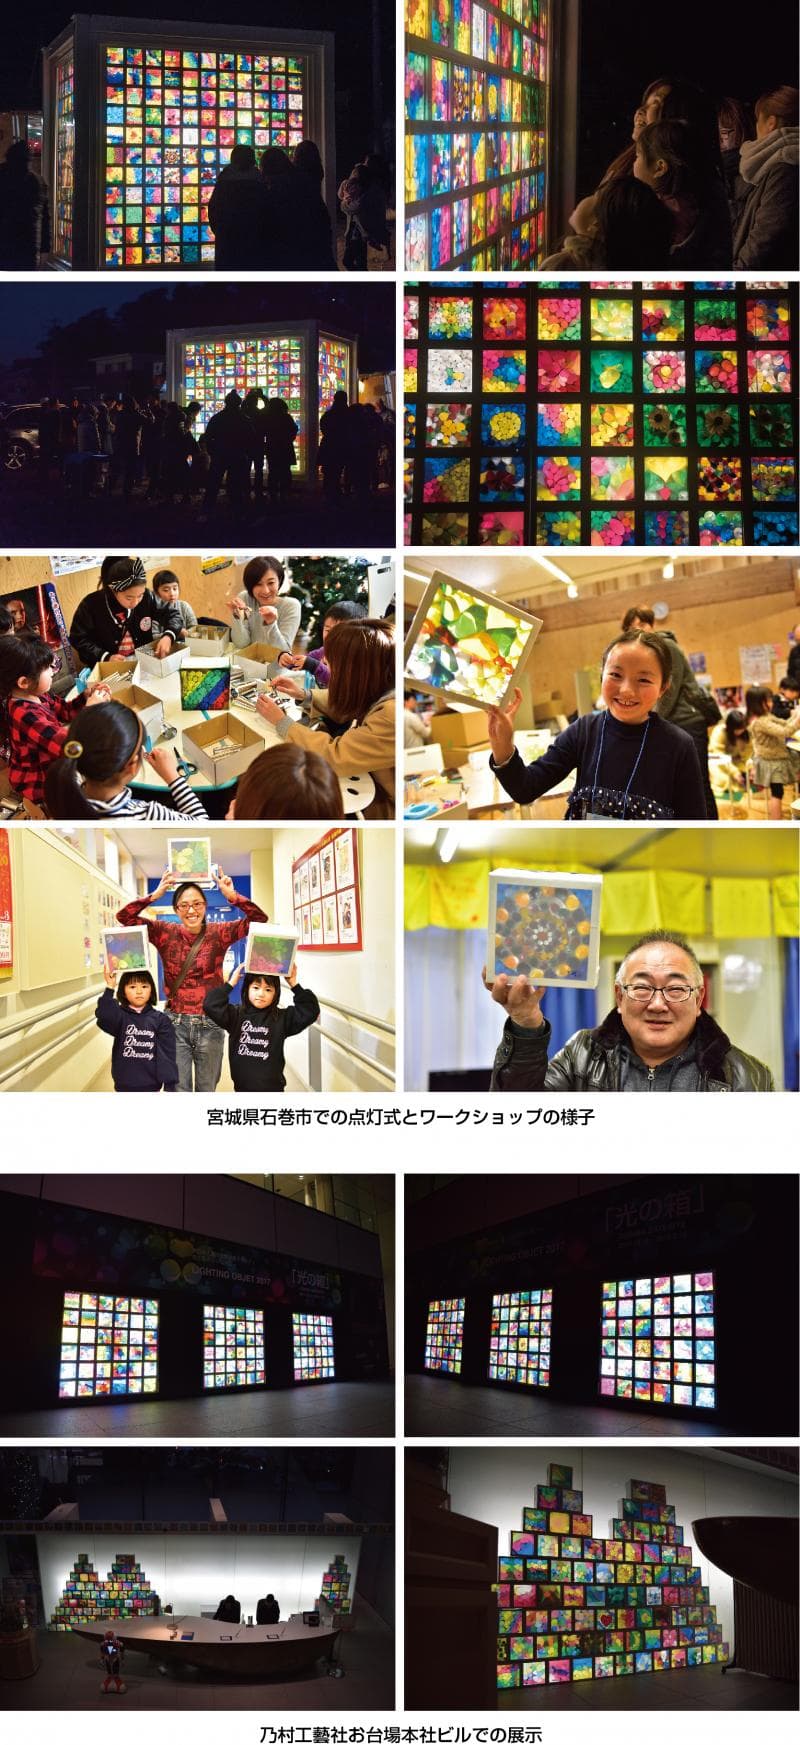 東日本大震災復興支援 東北と東京のコラボレーション「光の箱」